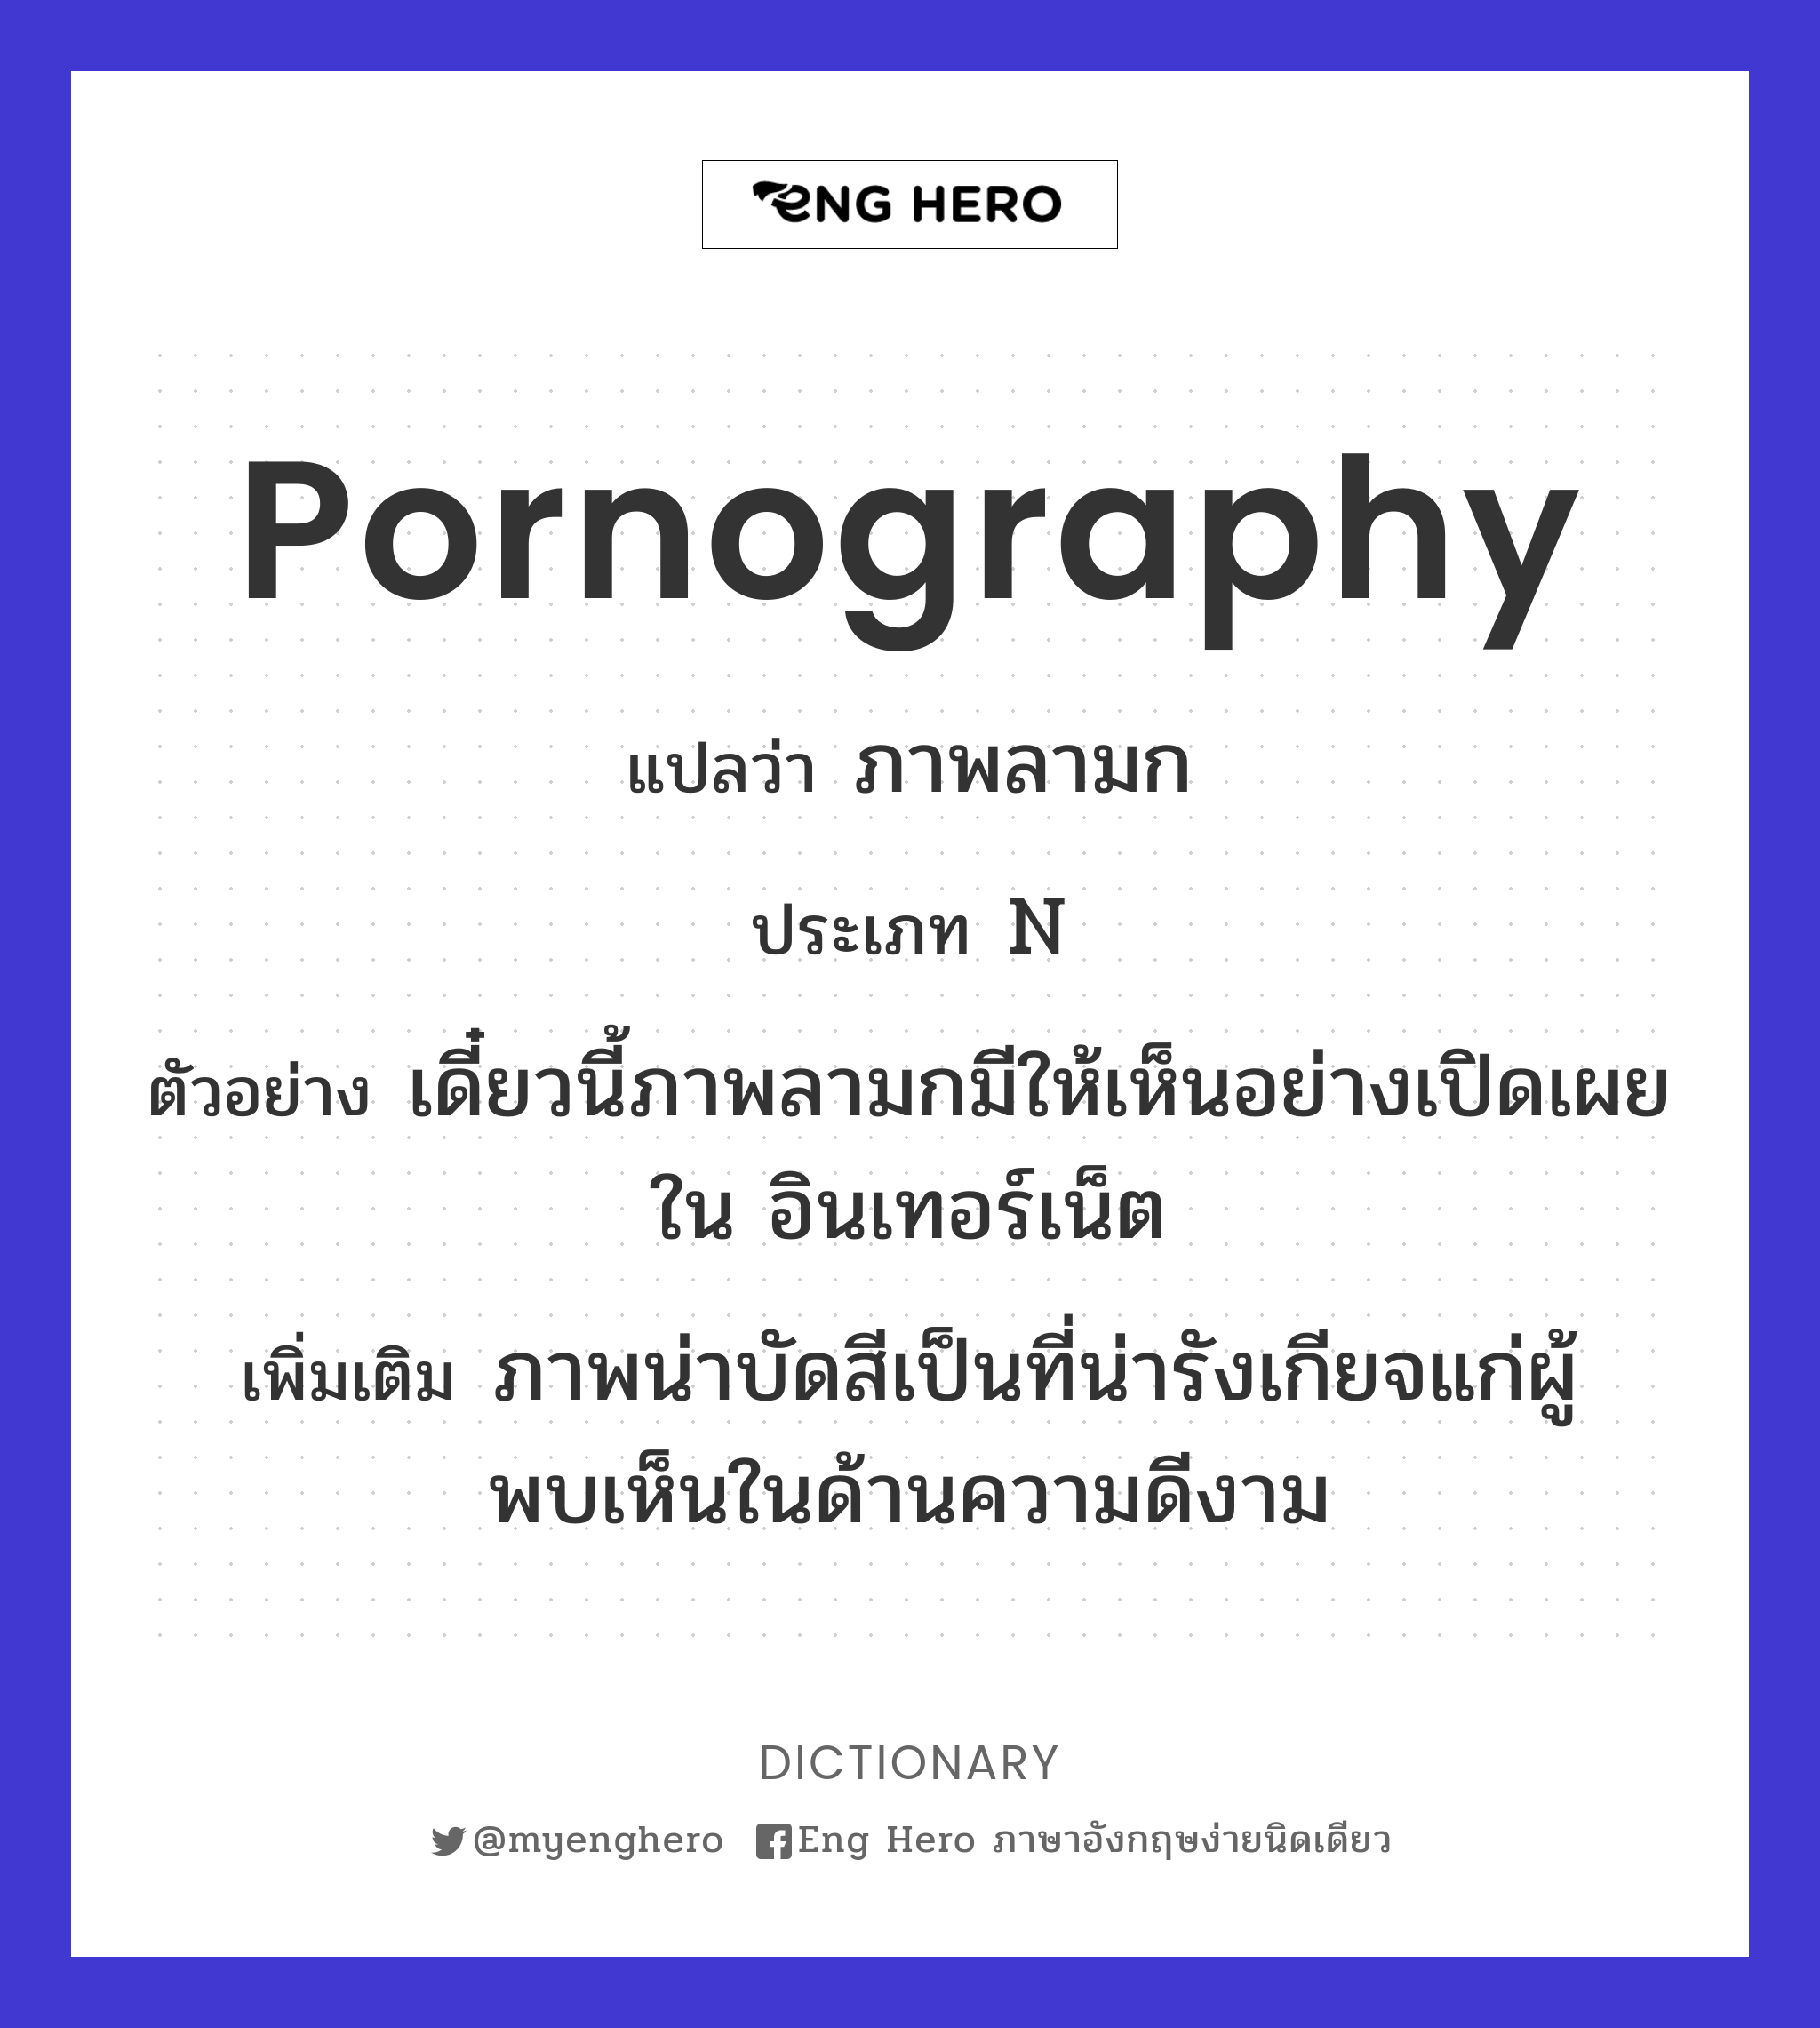 pornography